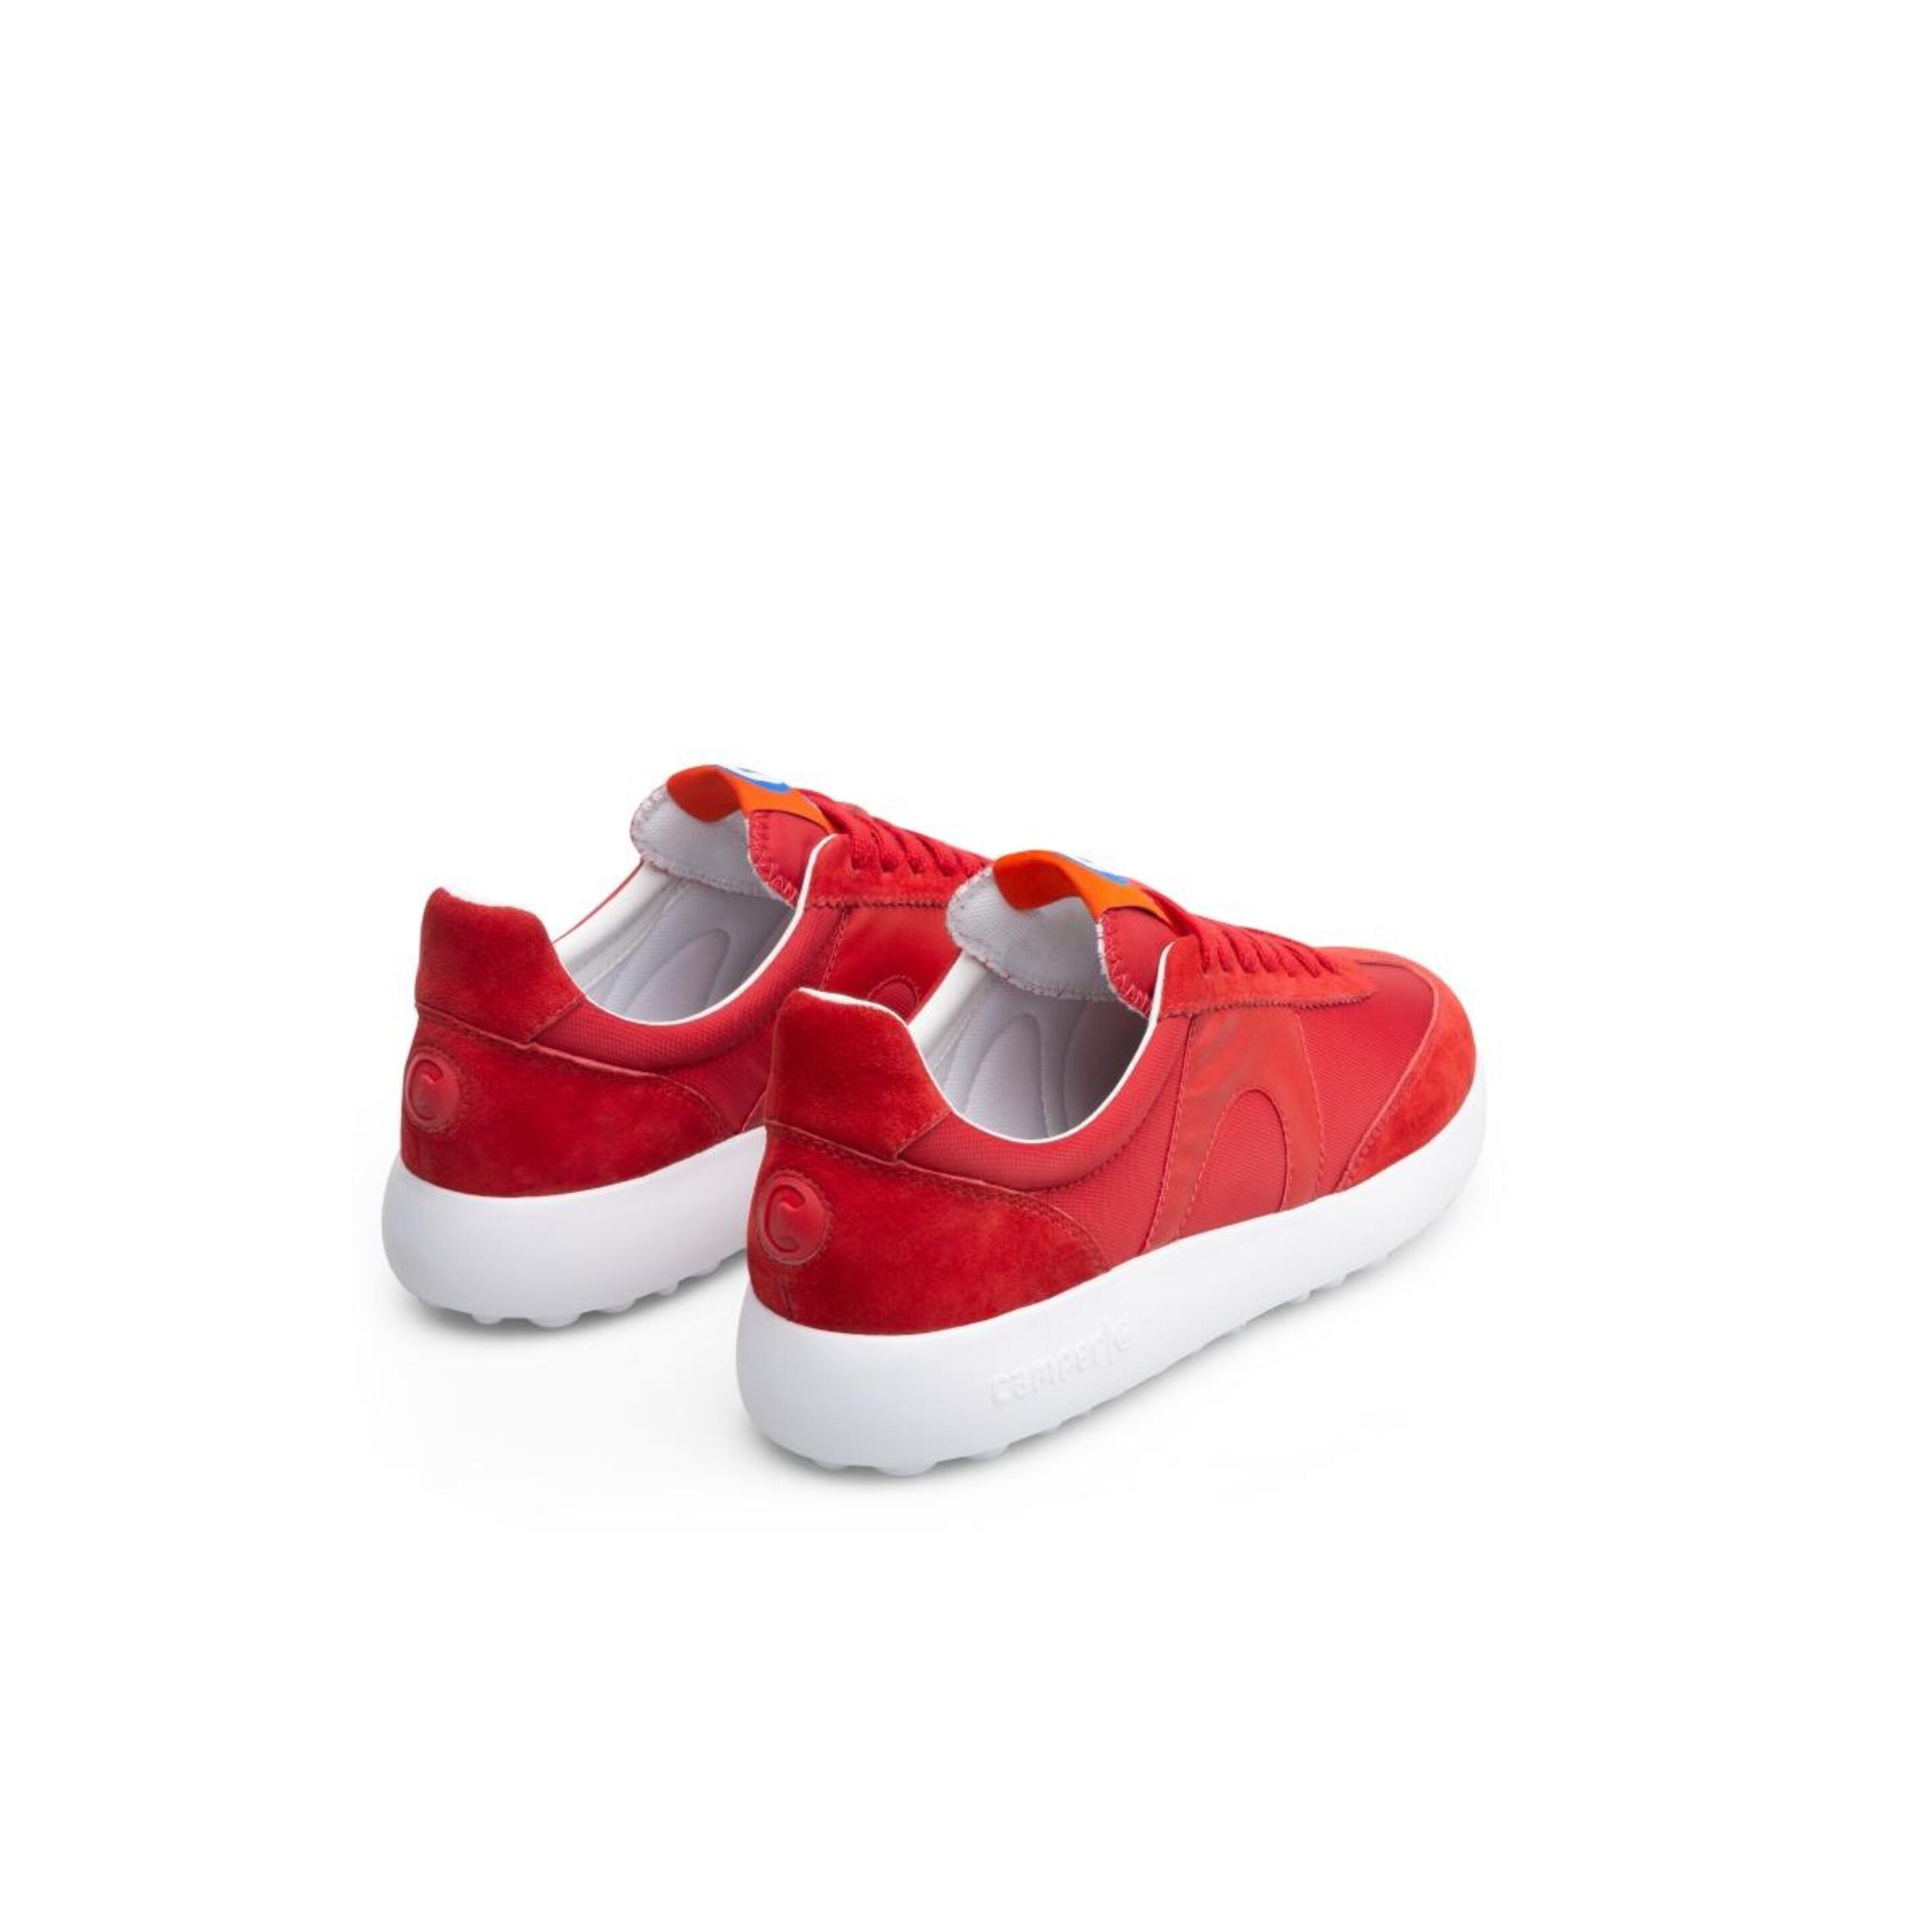 Zapatillas Deportivas Pelotas Xlf Camper - Rojo - Zapatos Mujer  MKP